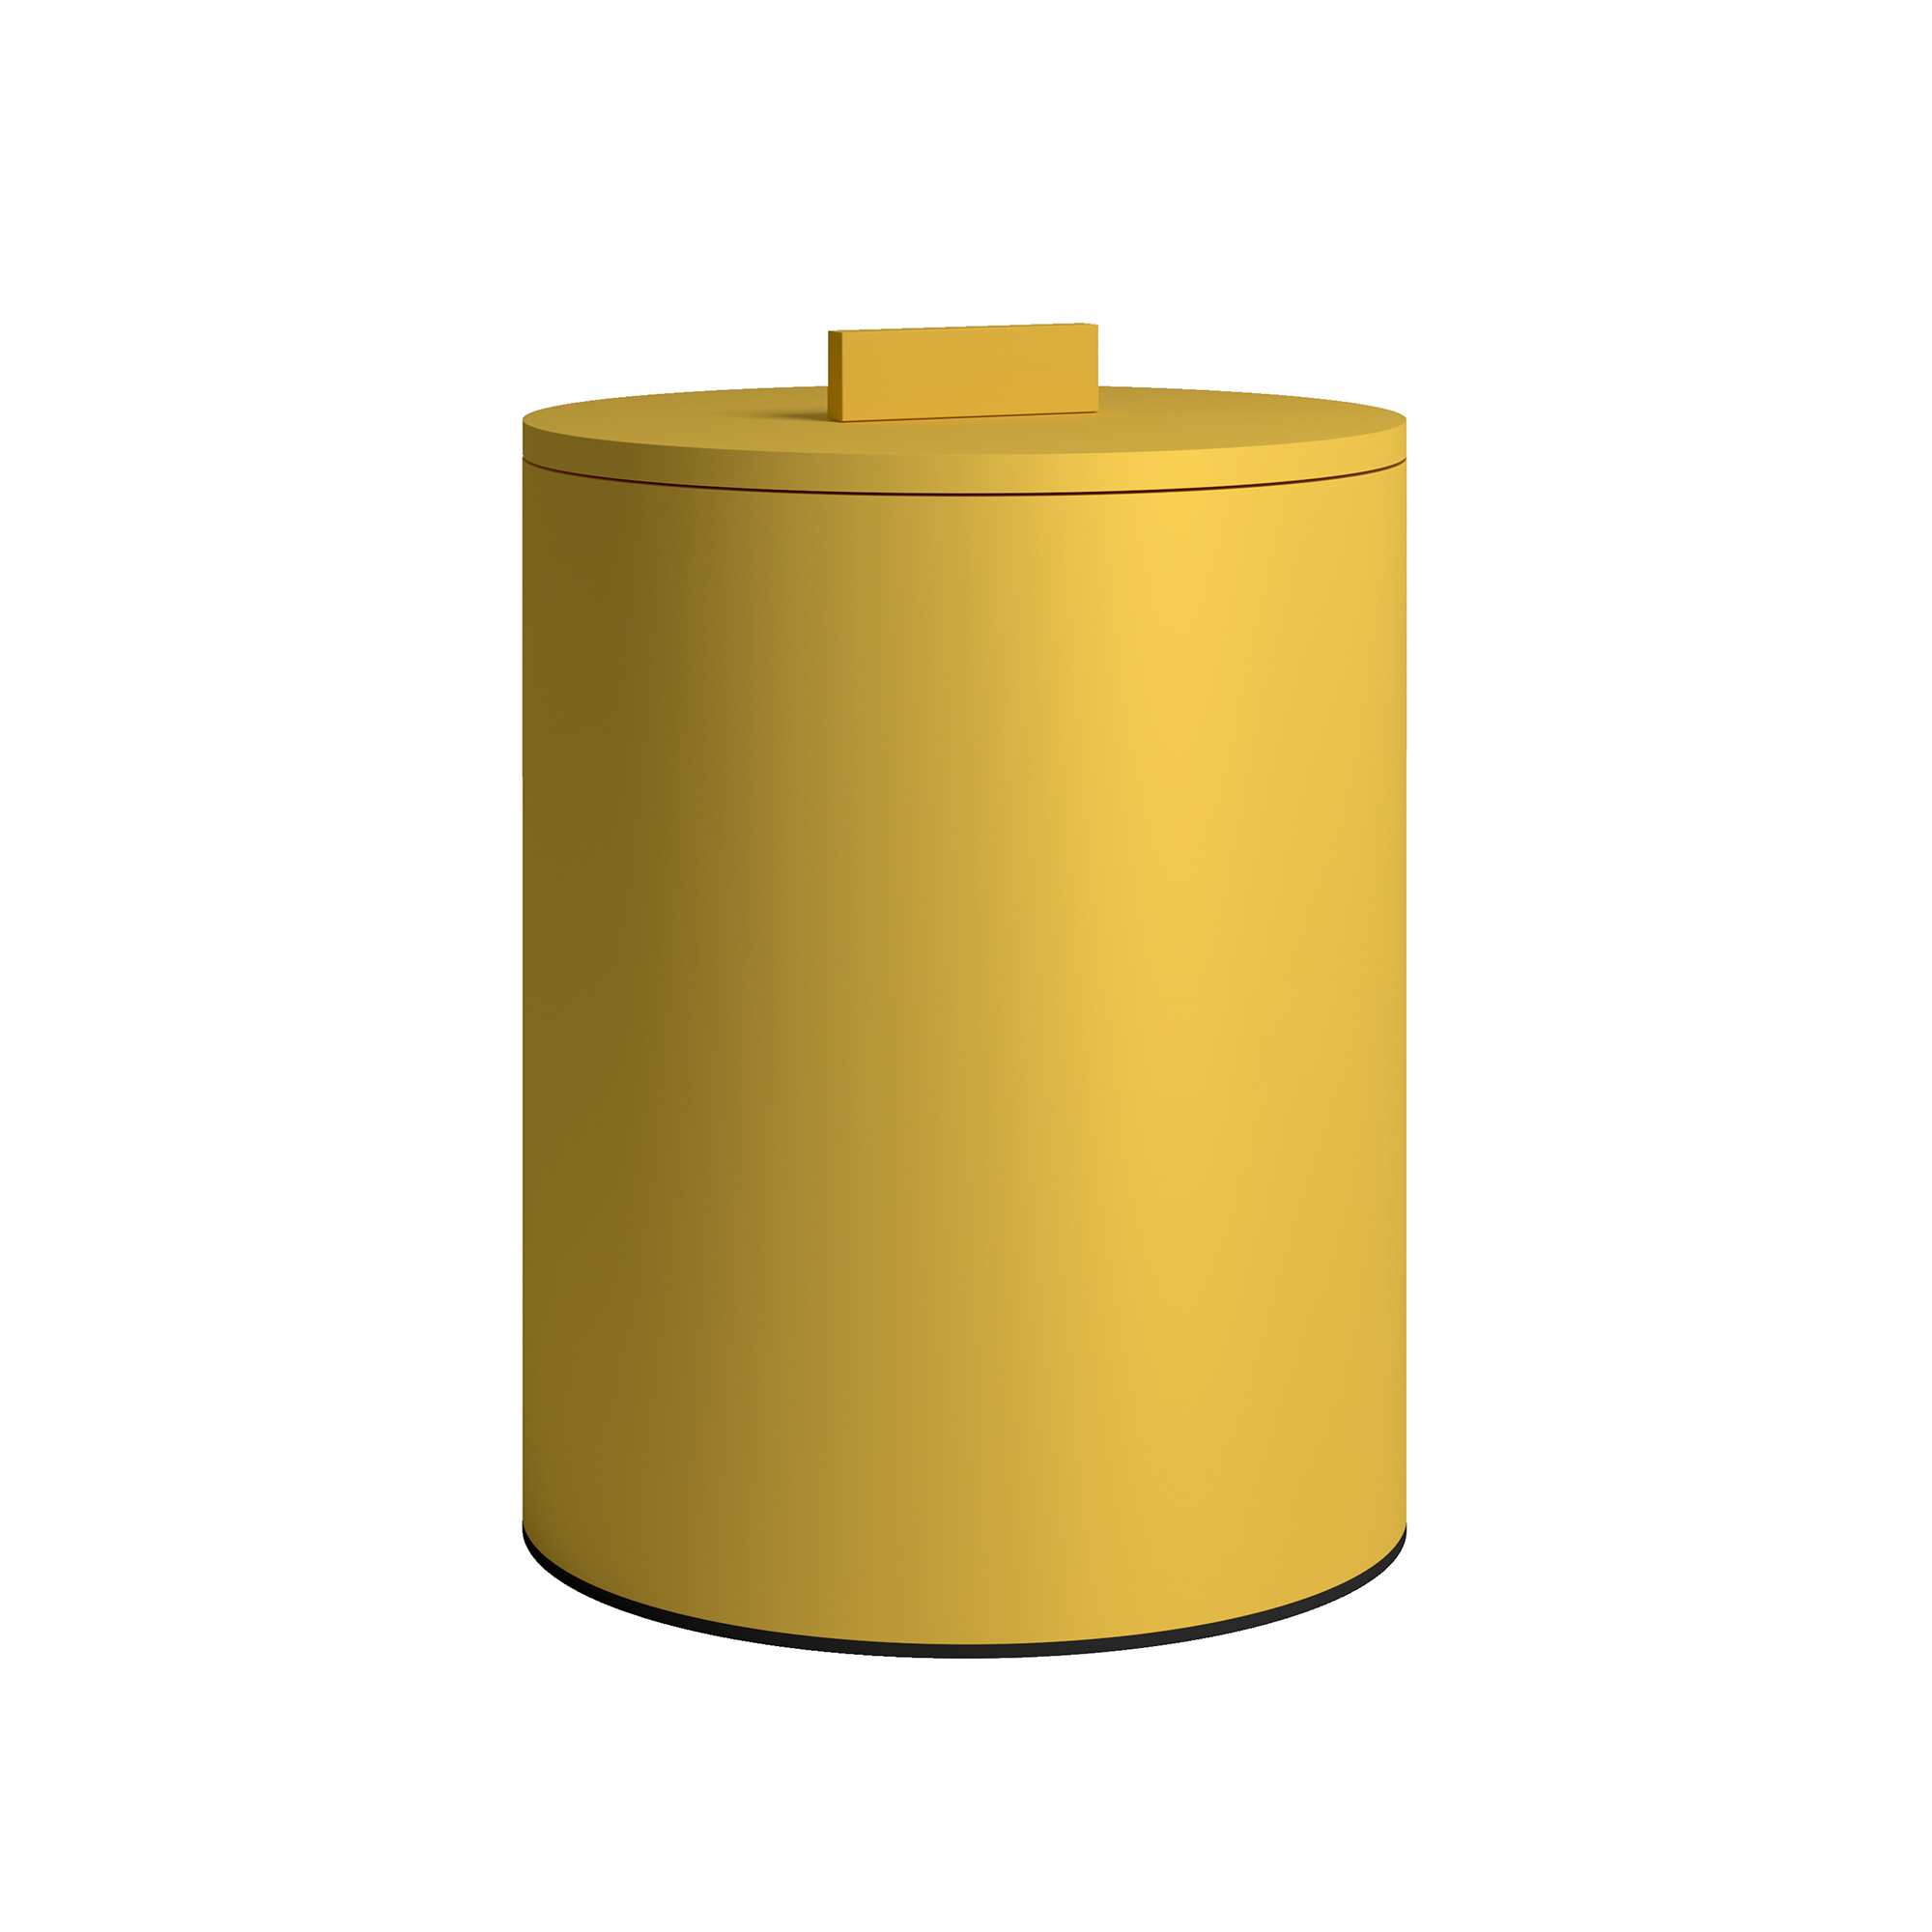 Καλάθι Απορριμμάτων Πάγκου 6lt Ανοξείδωτο Matt Yellow Pam & Co Φ20×25εκ. 2326-603 (Υλικό: Ανοξείδωτο, Χρώμα: Κίτρινο ) – Pam & Co – 2326-603